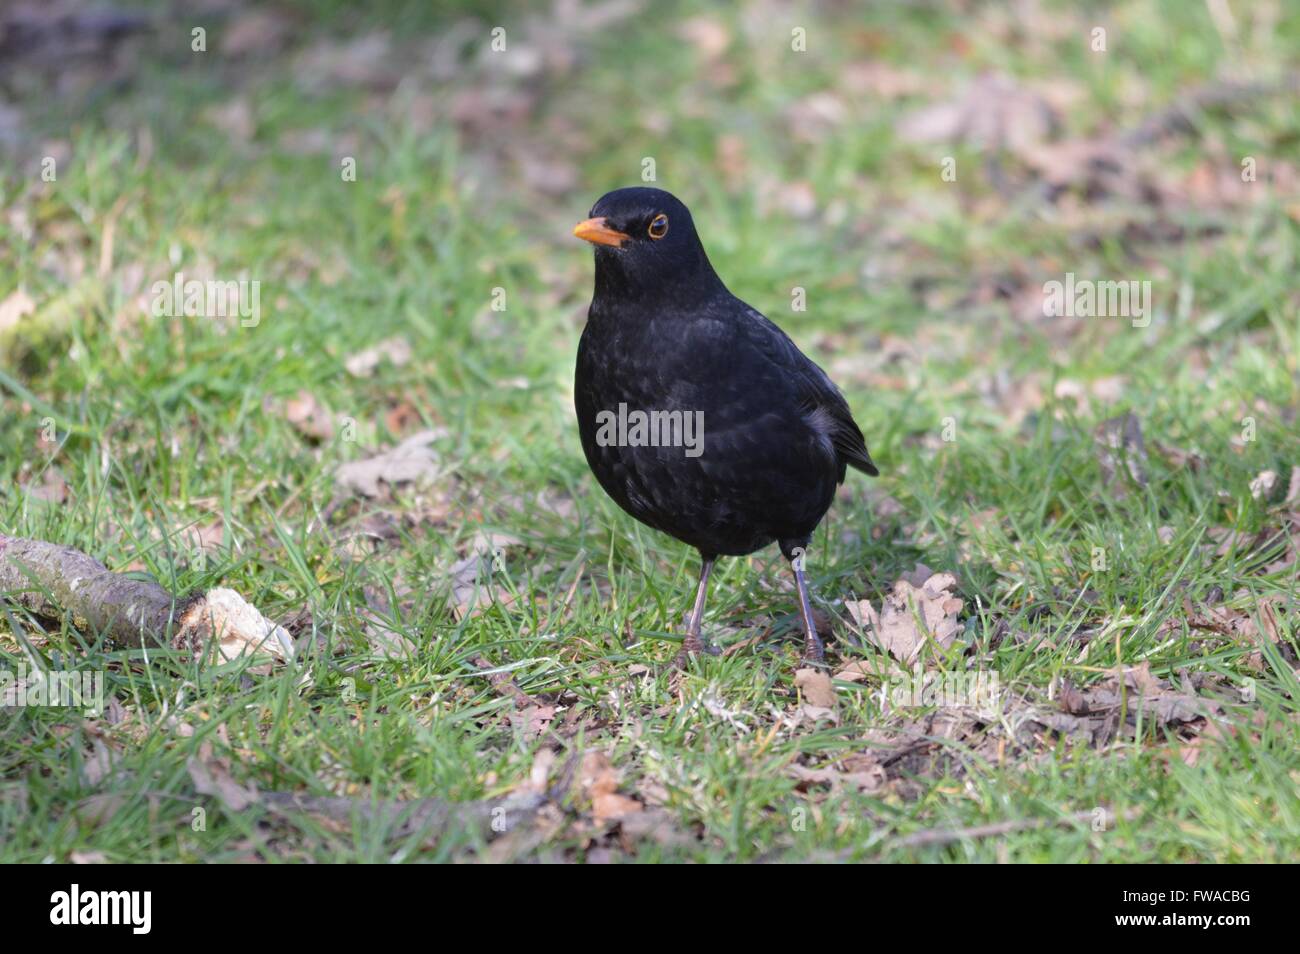 Portrait of a male Blackbird taken in early Spring. Stock Photo